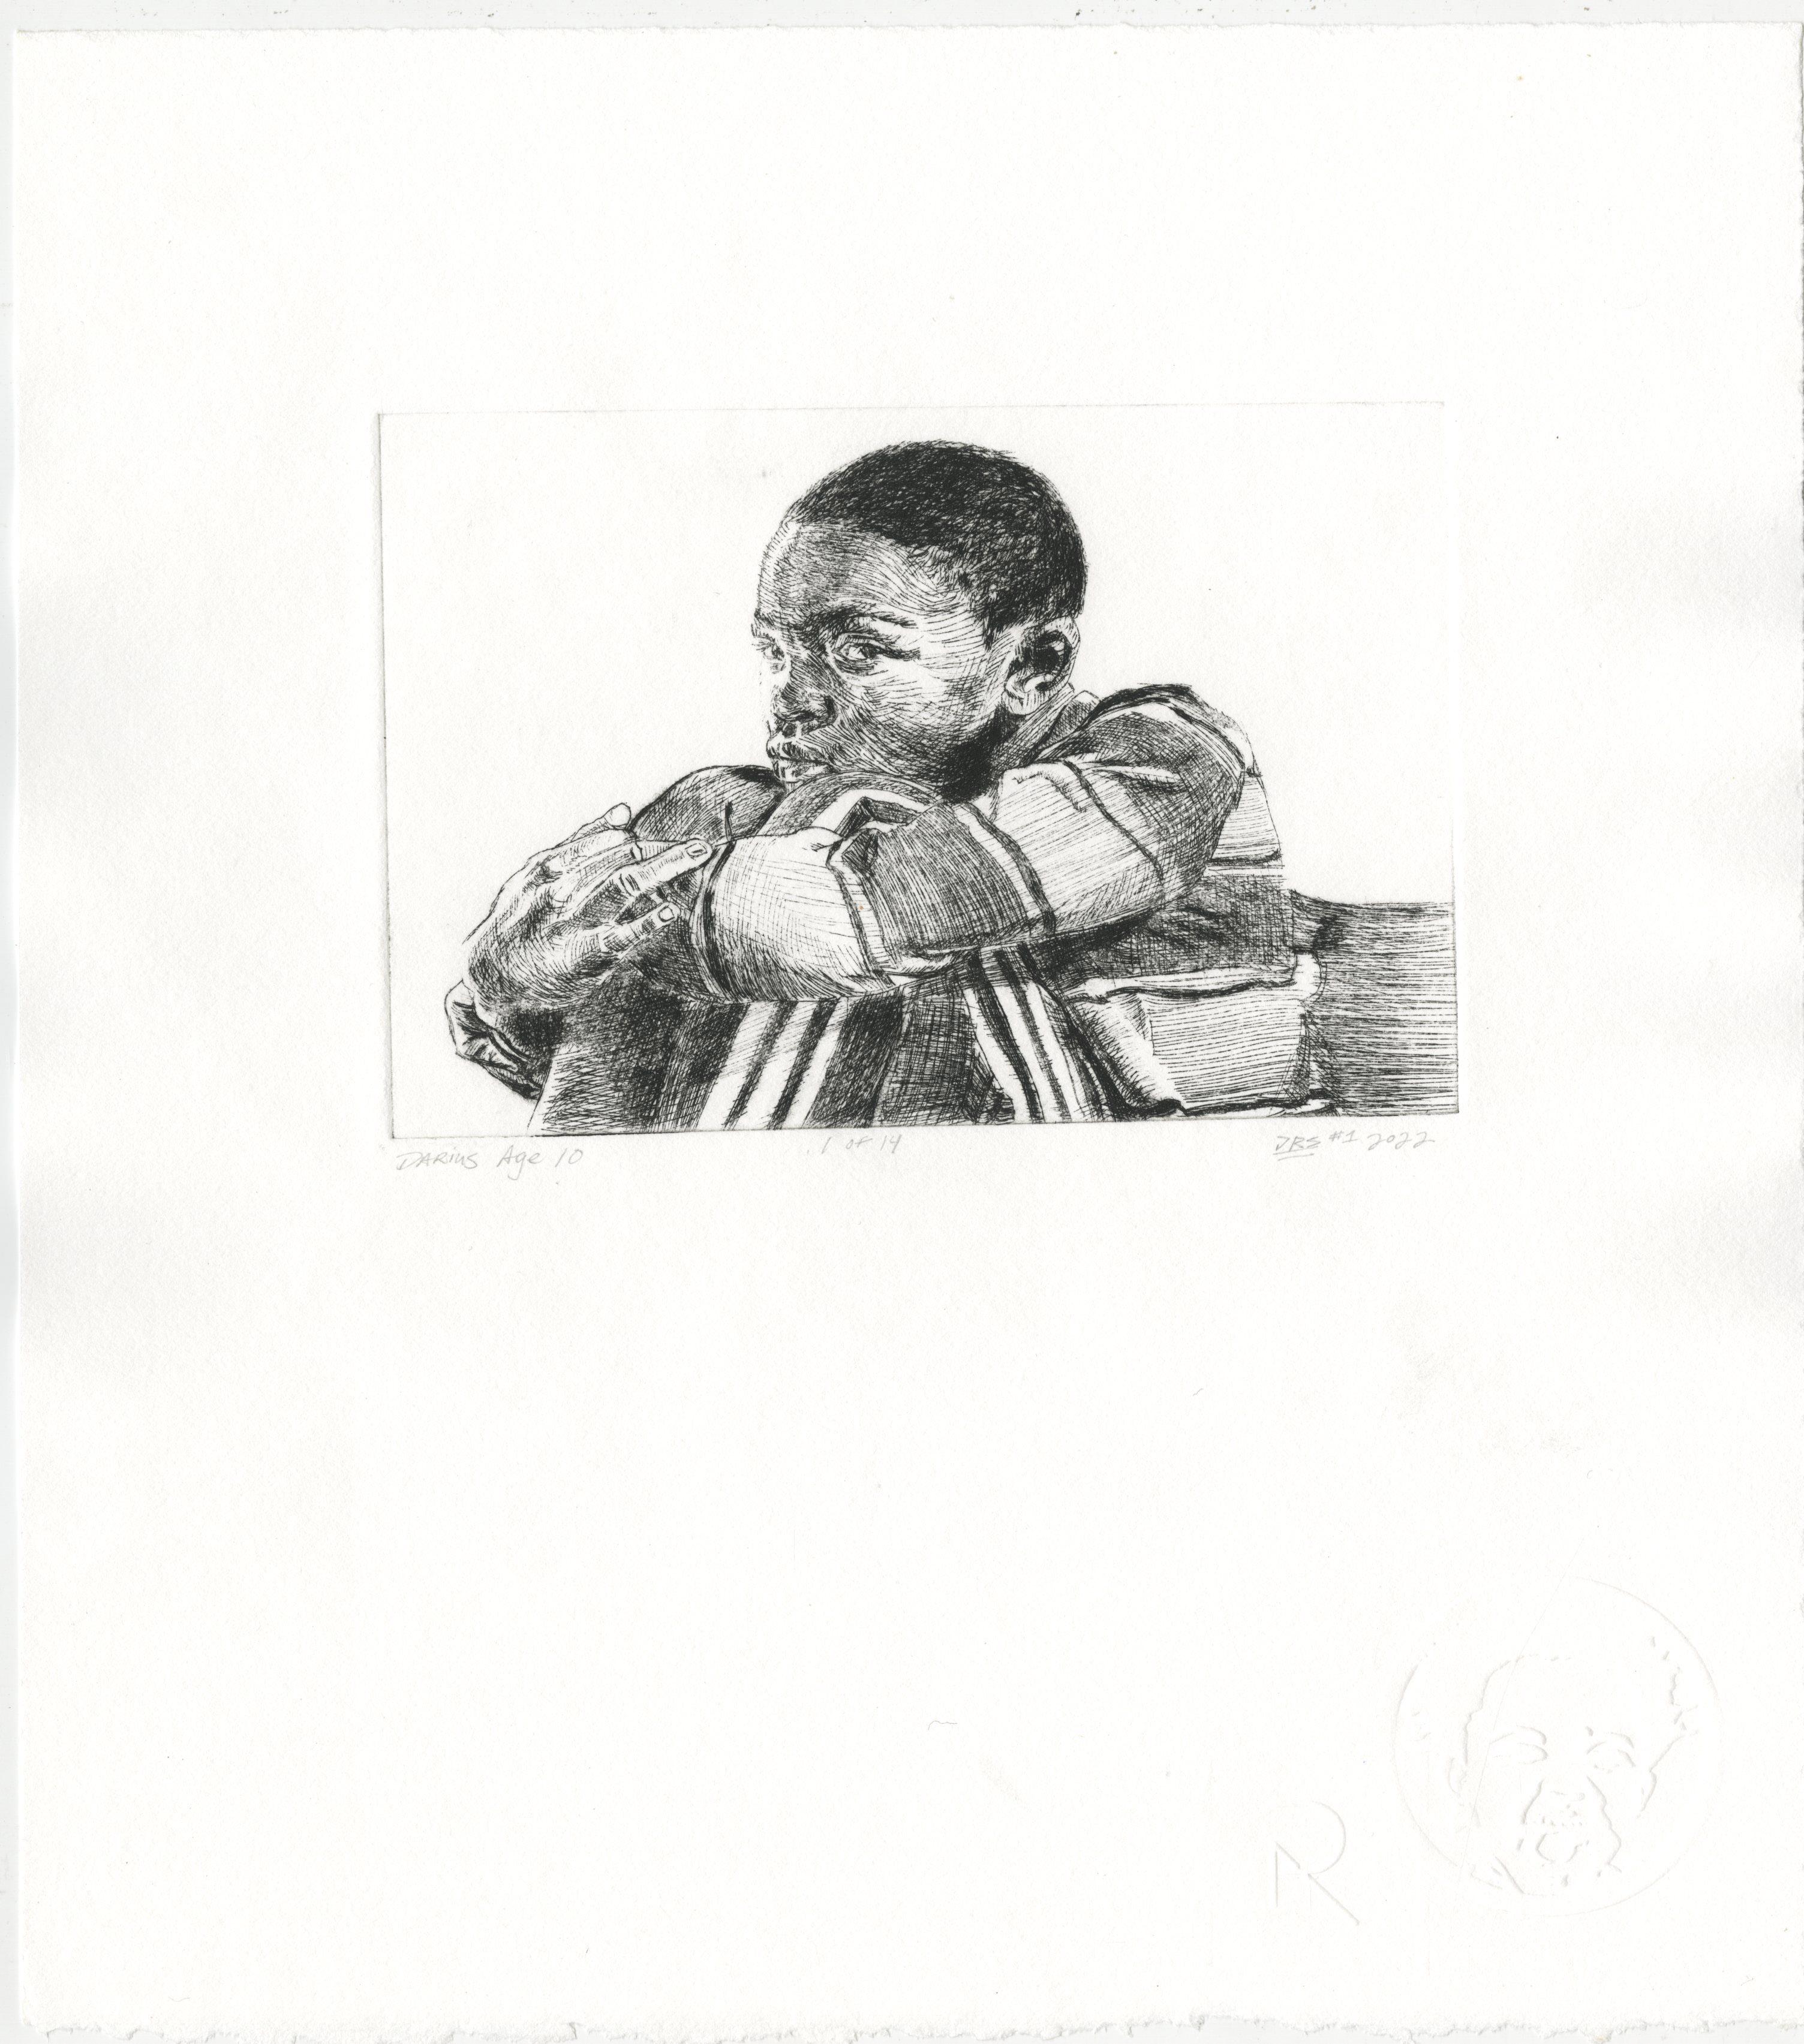 Darius à 10 ans - Print de Darius Steward